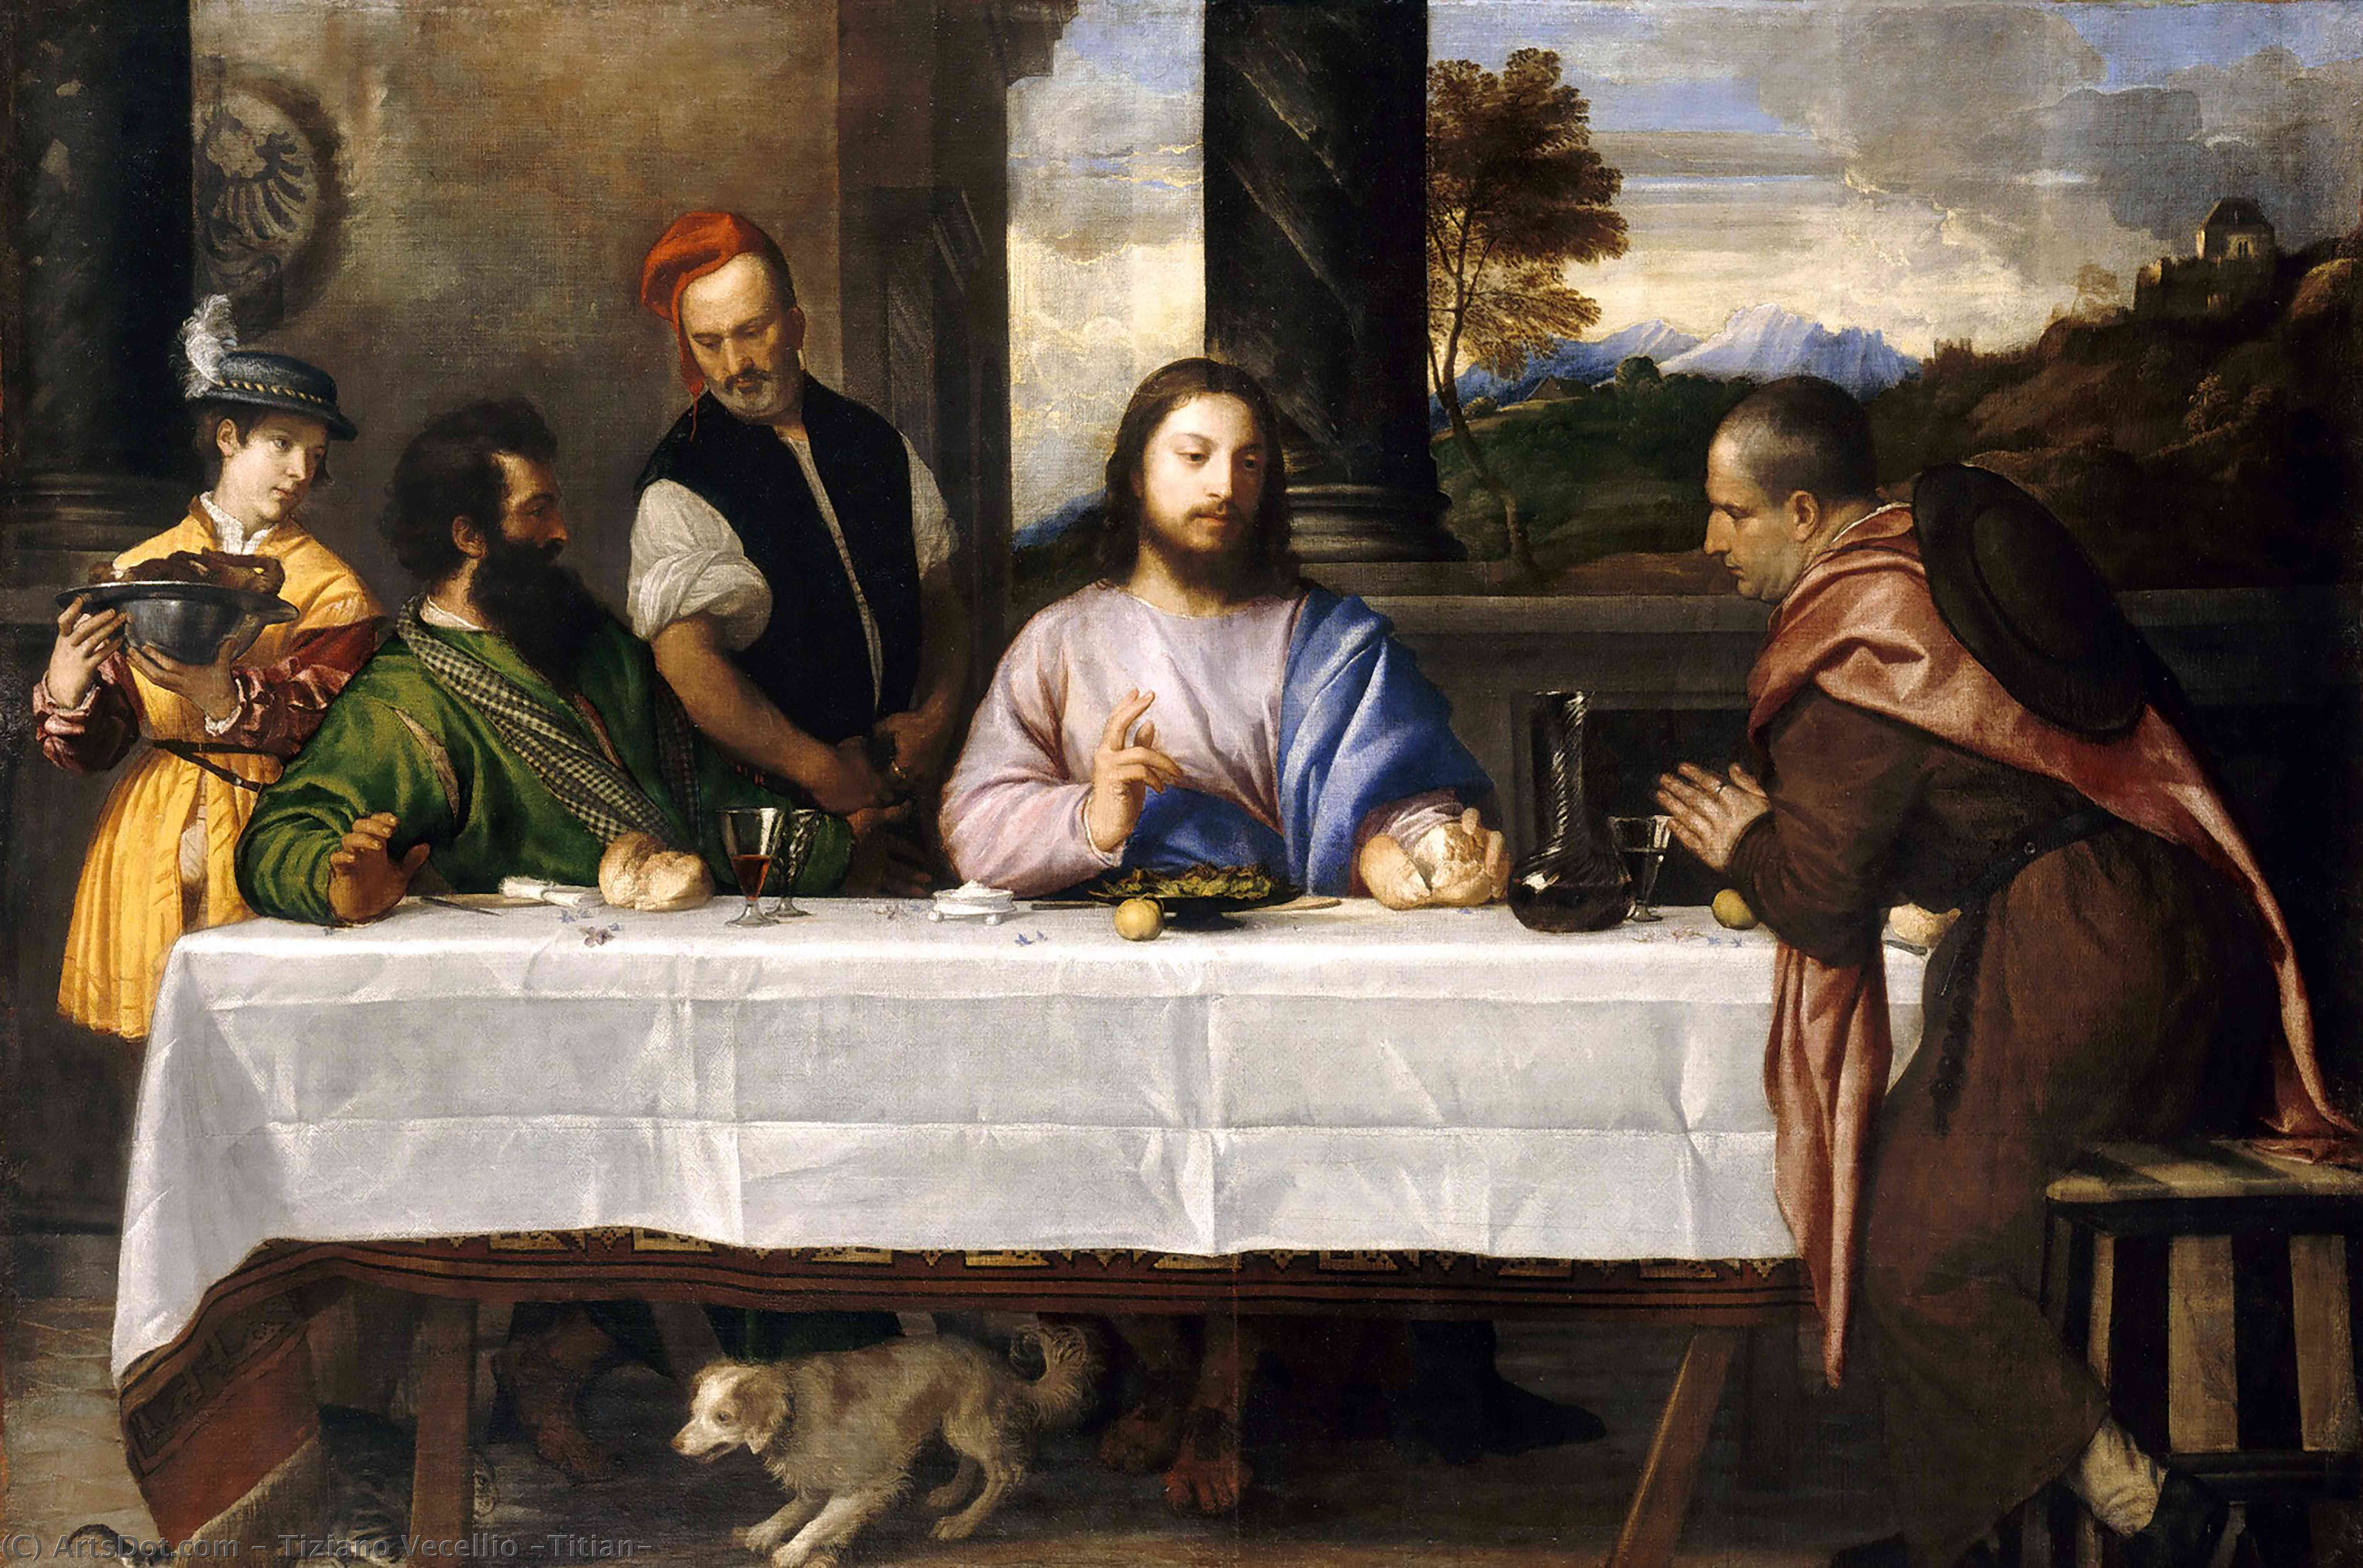 Compra Riproduzioni D'arte Del Museo La cena ad Emmaus, 1560 di Tiziano Vecellio (Titian) (1490-1576, Italy) | ArtsDot.com